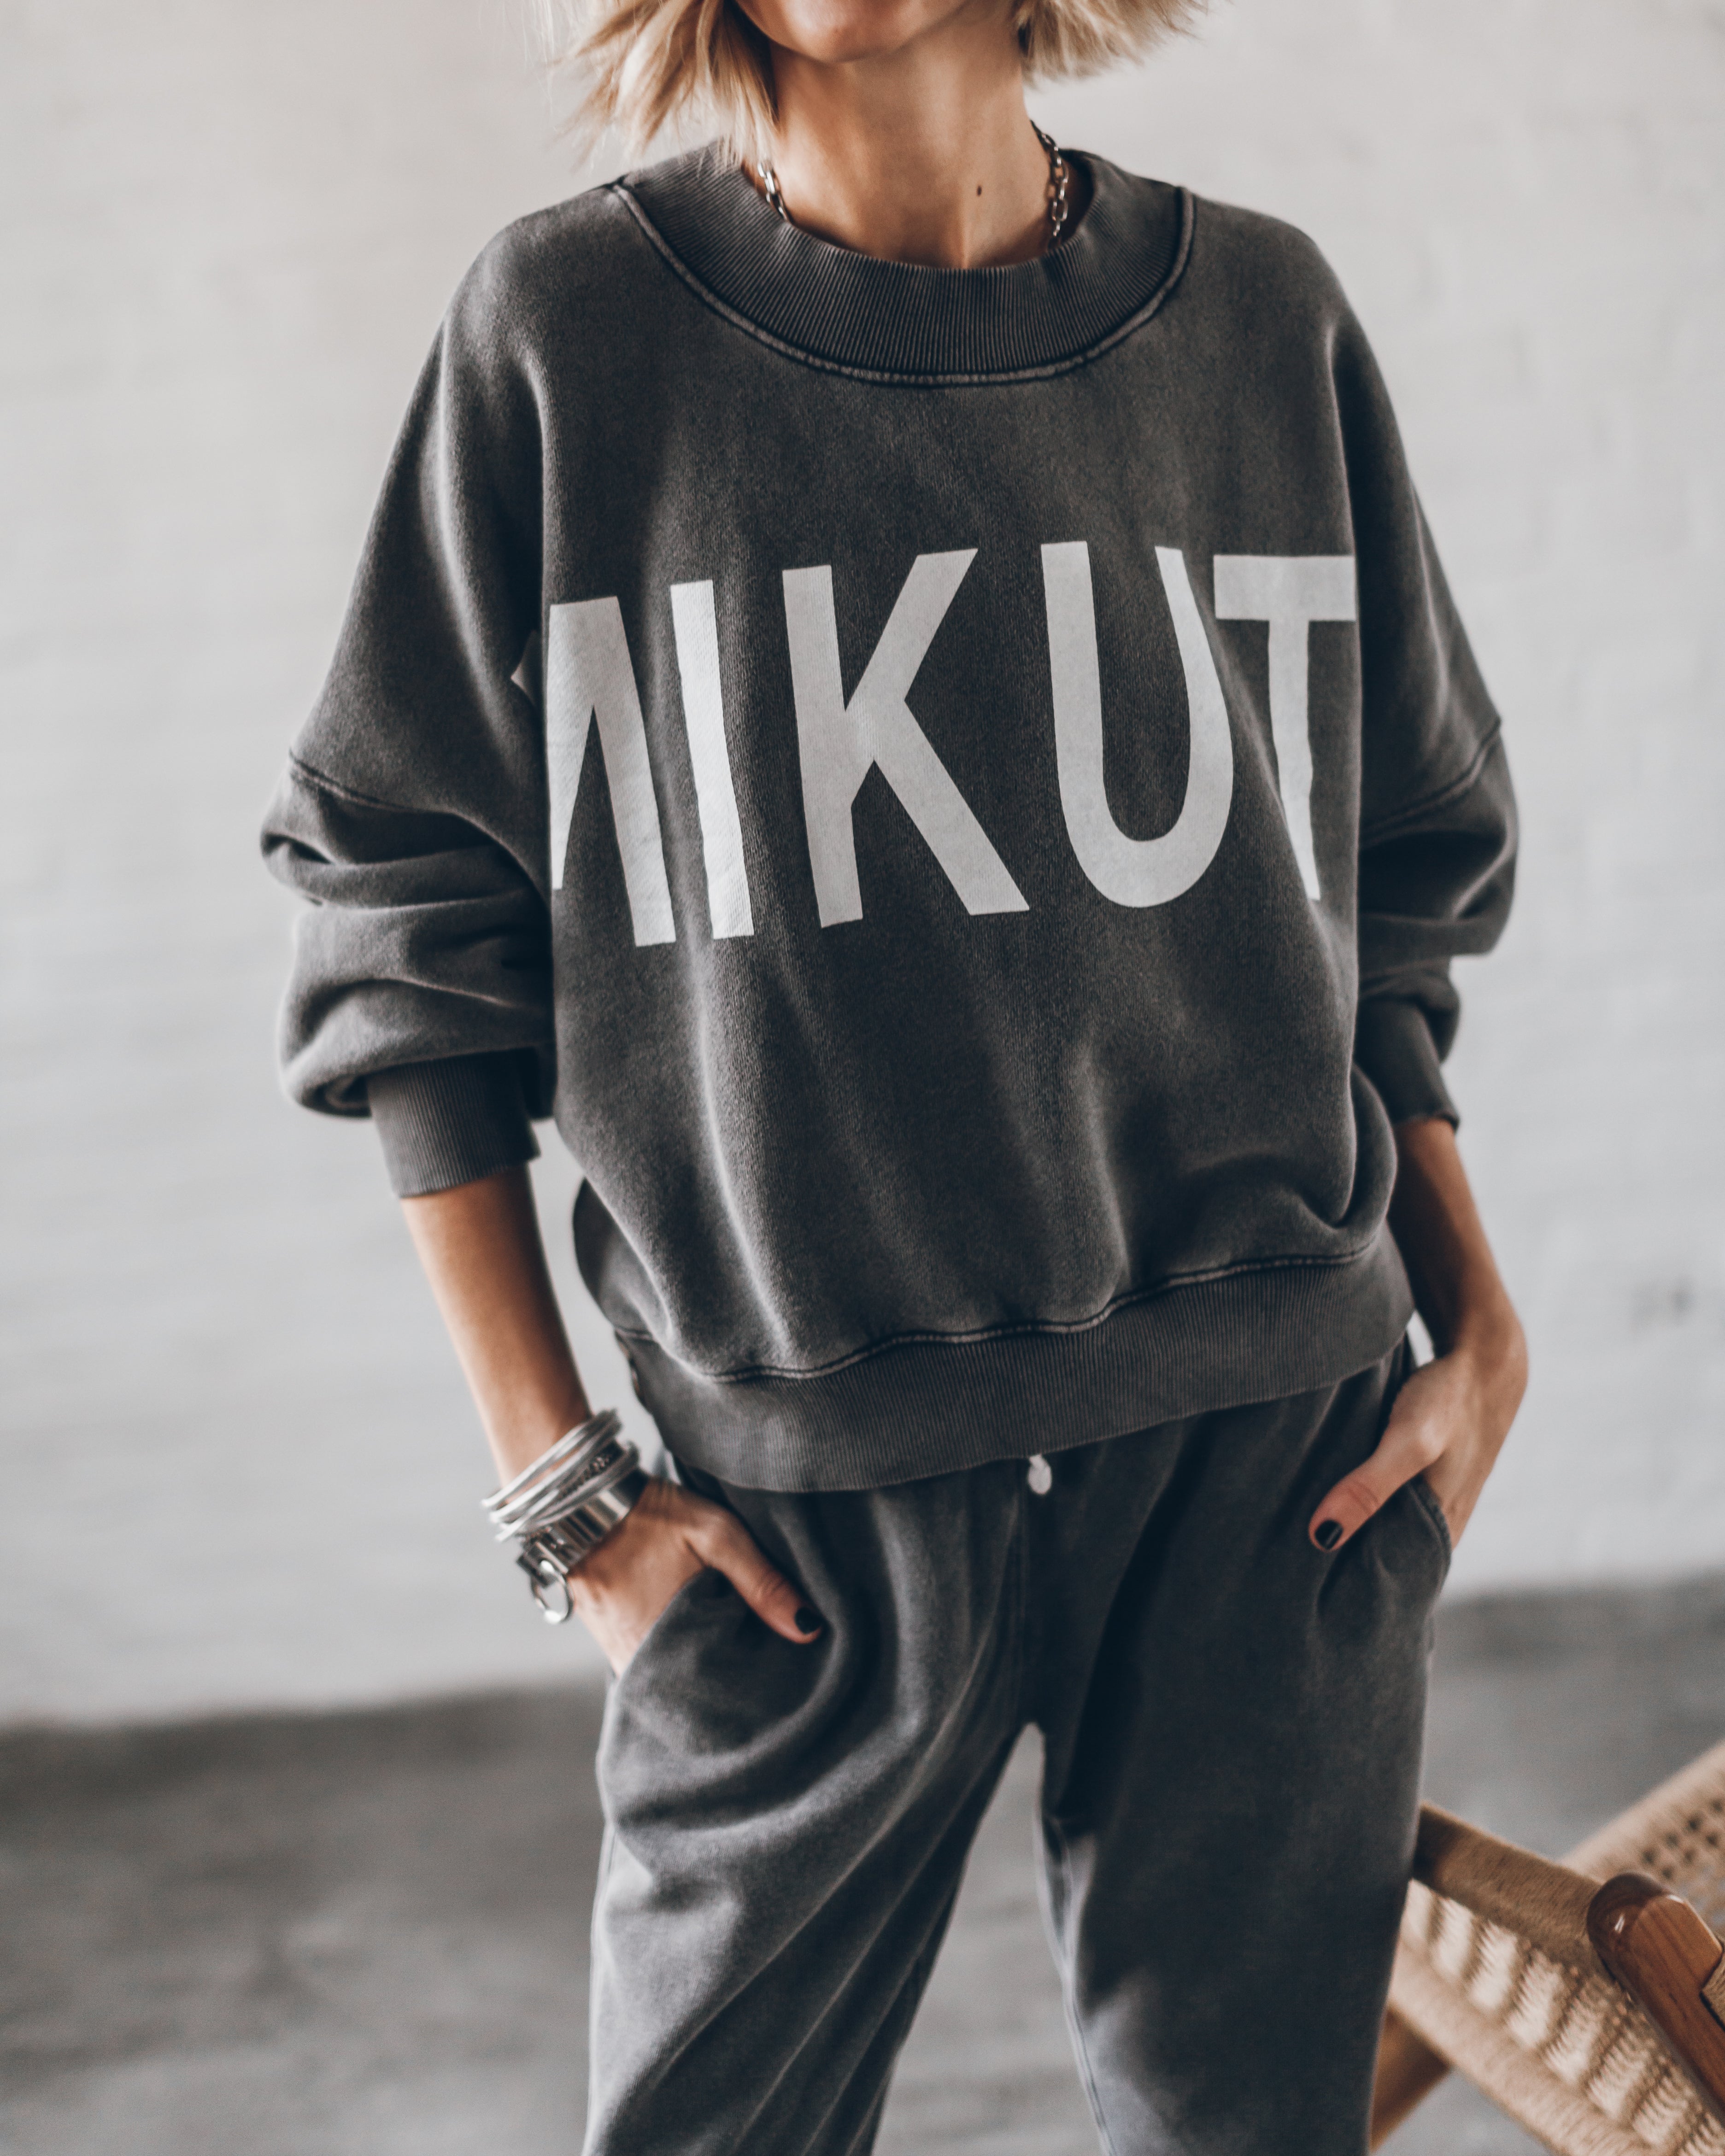 The Black Faded Mikuta Sweater